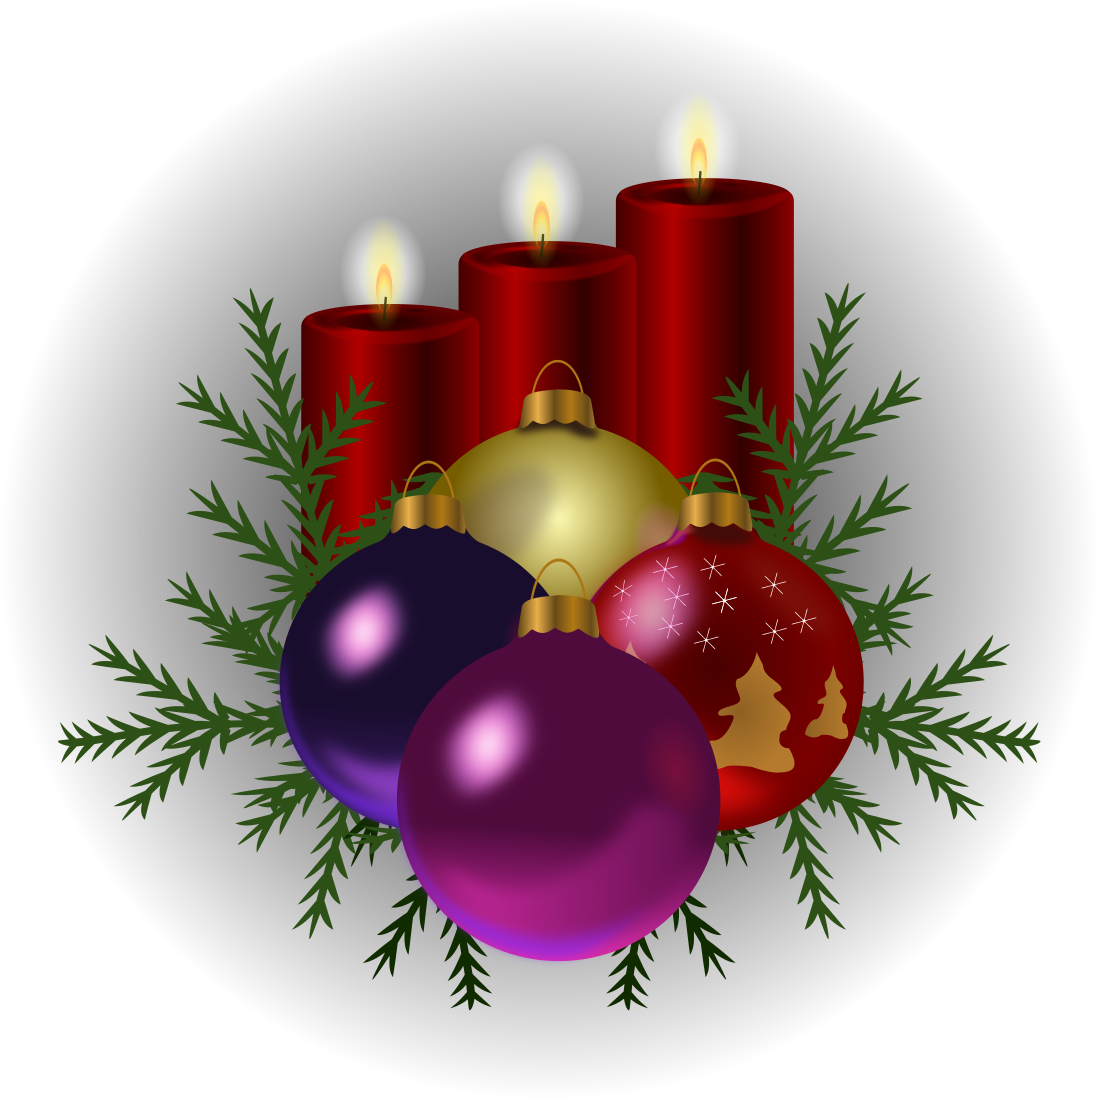 Vánoční texty zdarma ke stažení - Přání k Vánocům zdarma ke stažení